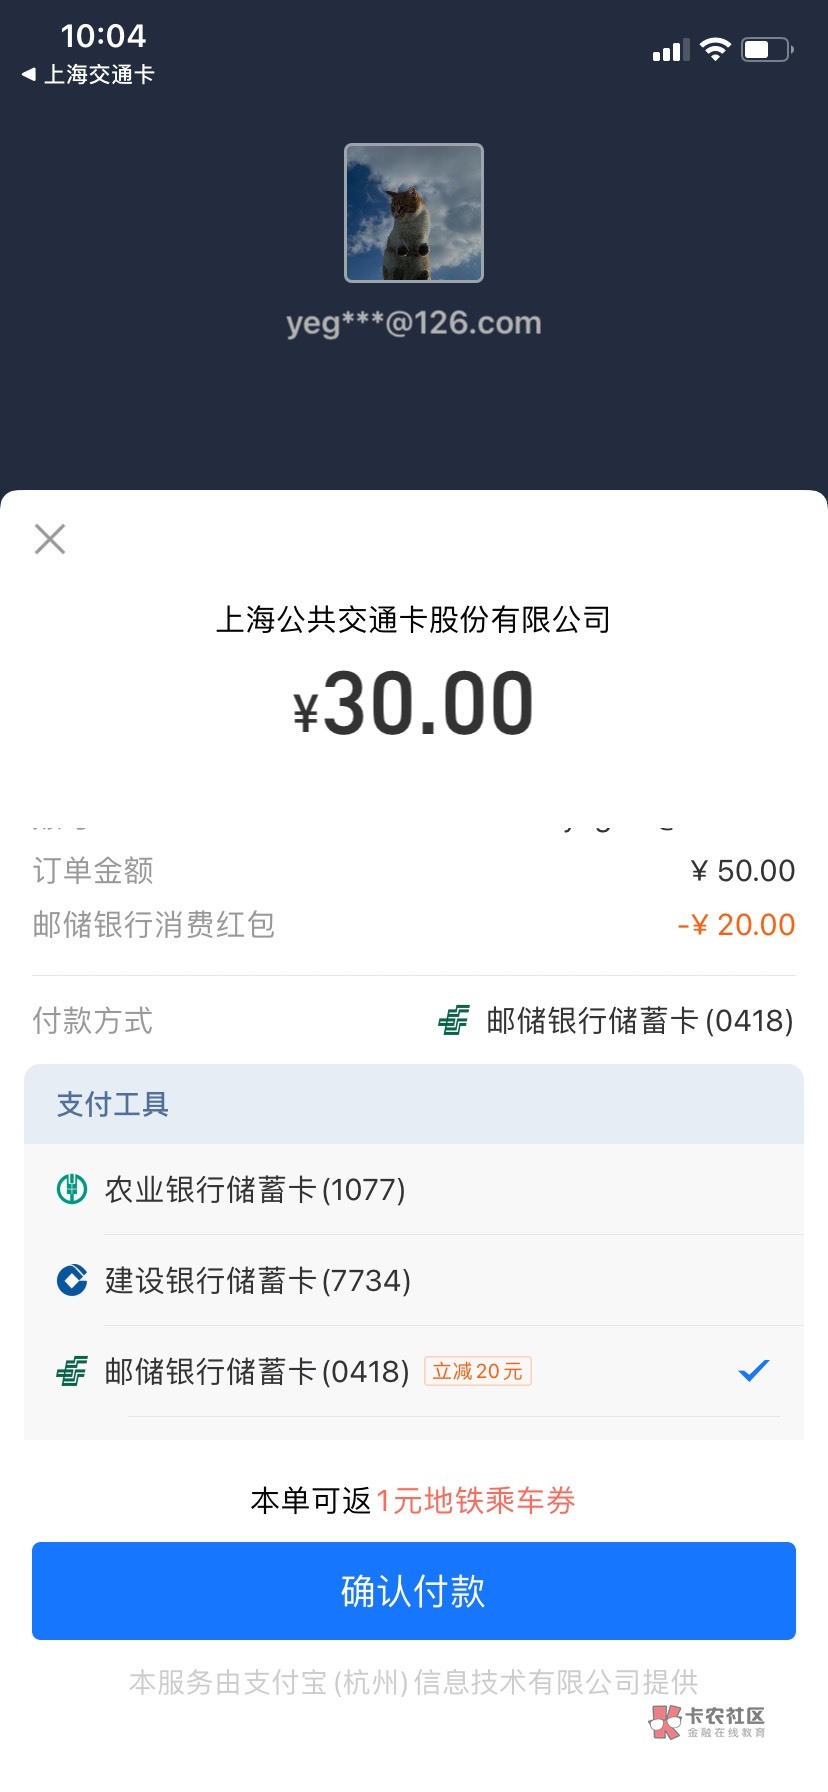 感谢老哥分享，邮政定位徐州不用飞，直接一分购20支付宝红包通用



87 / 作者:回放回 / 